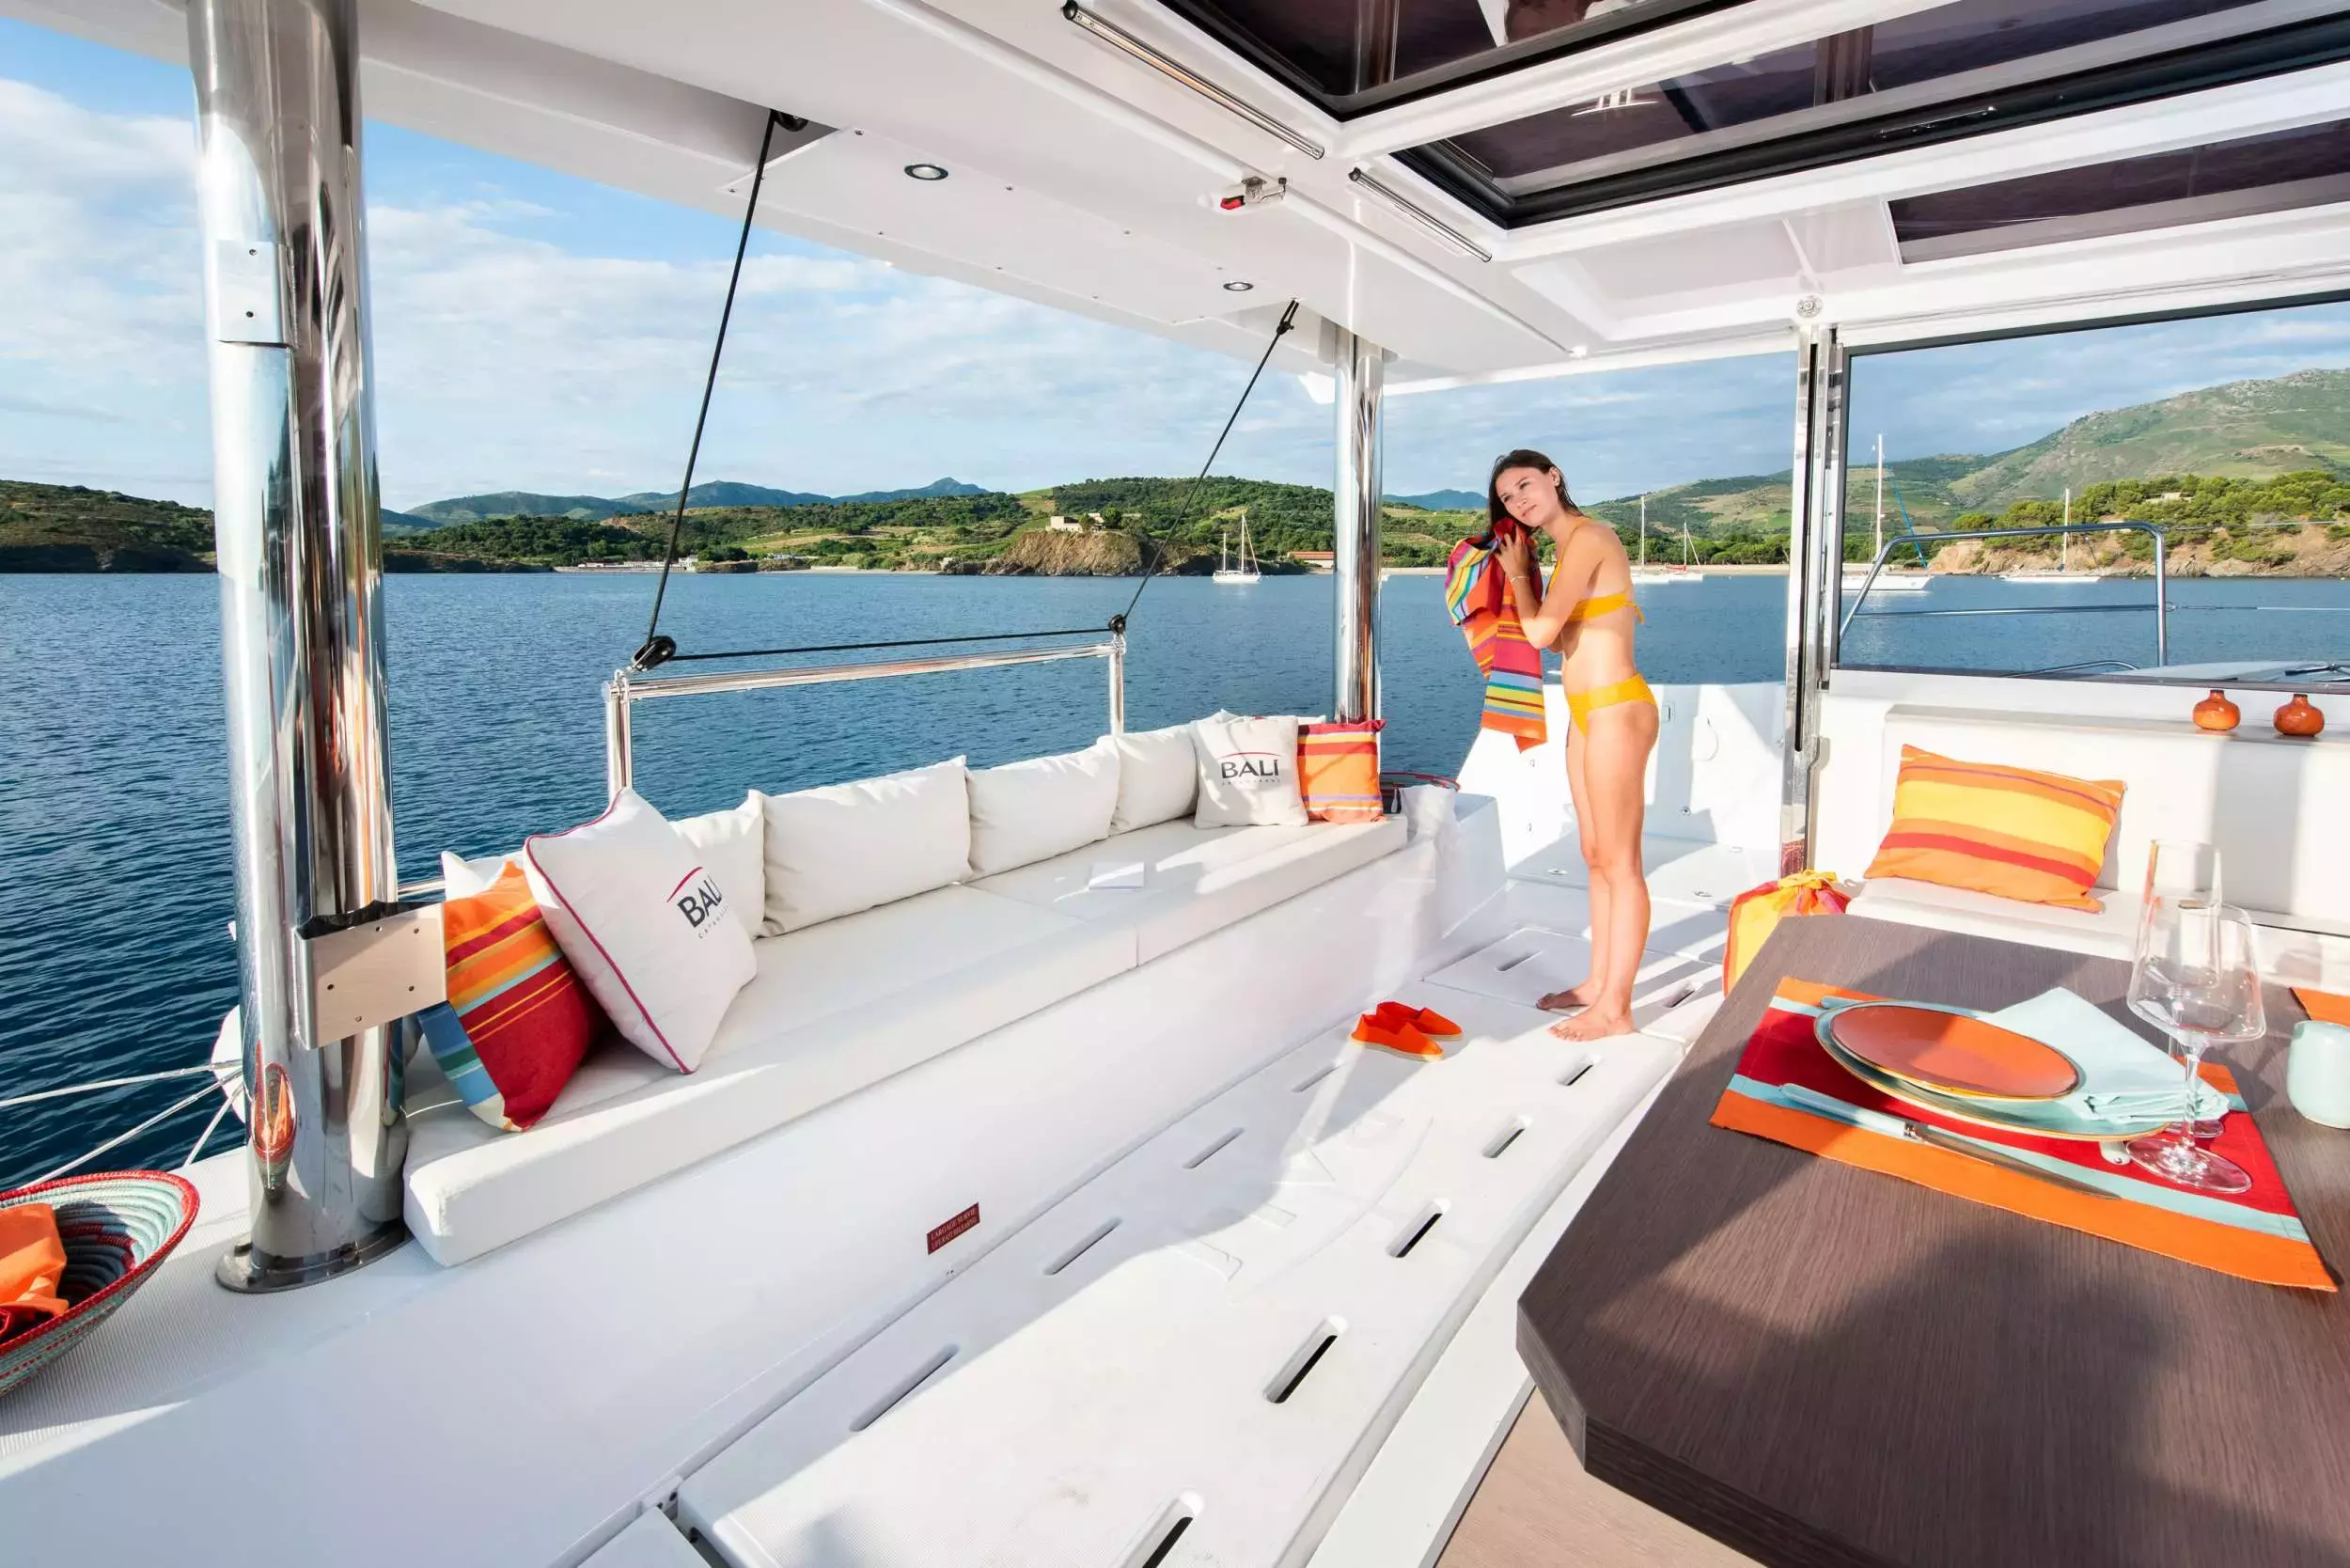 Yemaya by Bali Catamarans - Top rates for a Rental of a private Sailing Catamaran in Spain